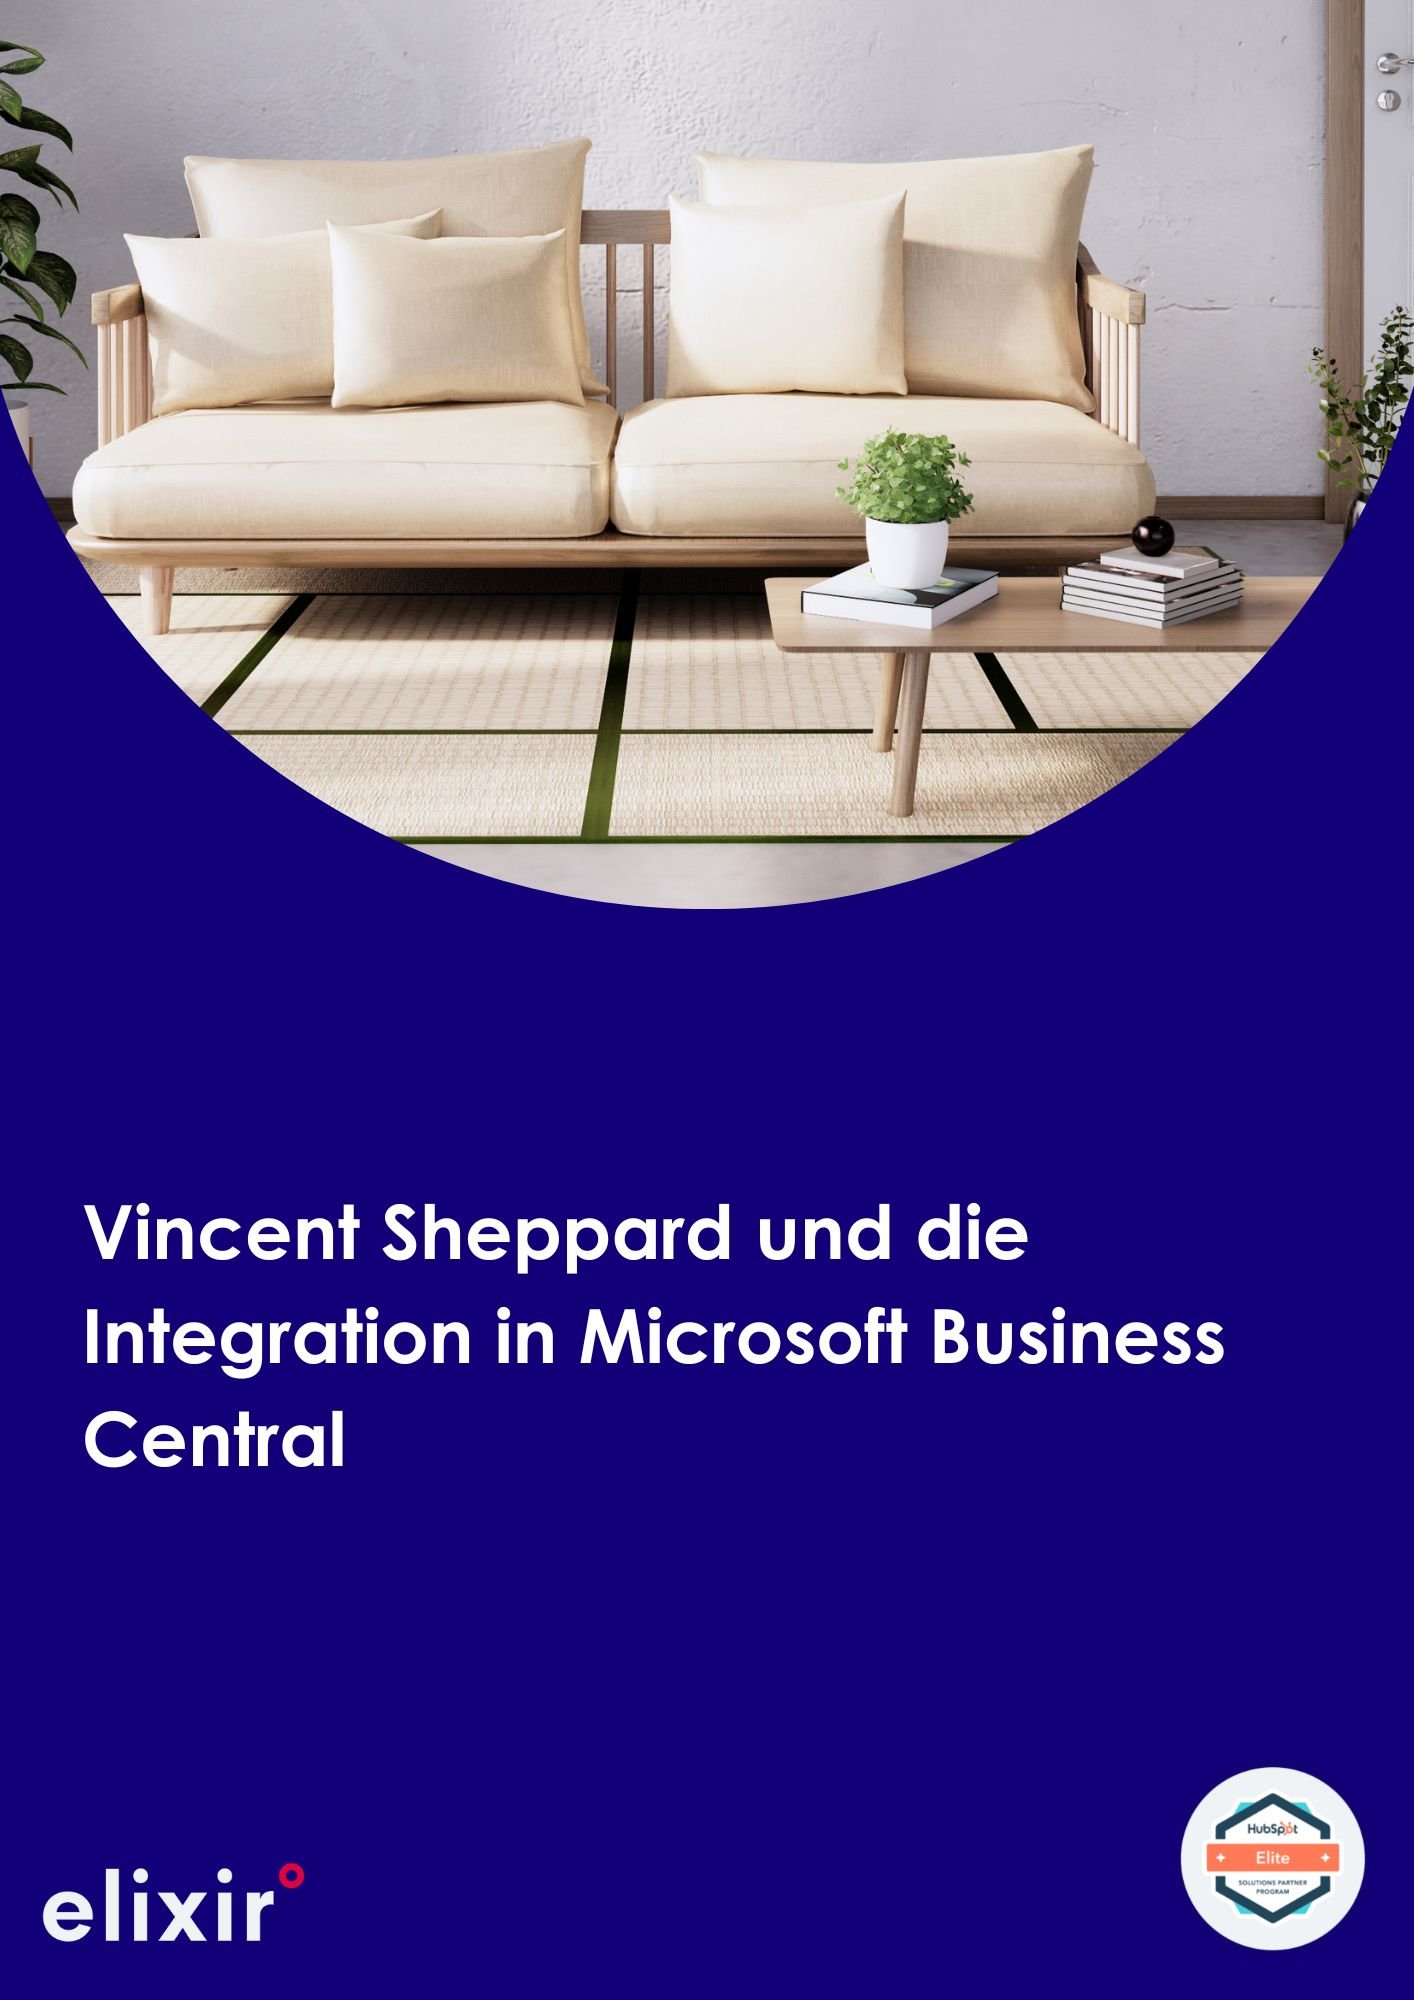 [DE] CC - Vincent Sheppard - Business Central integration